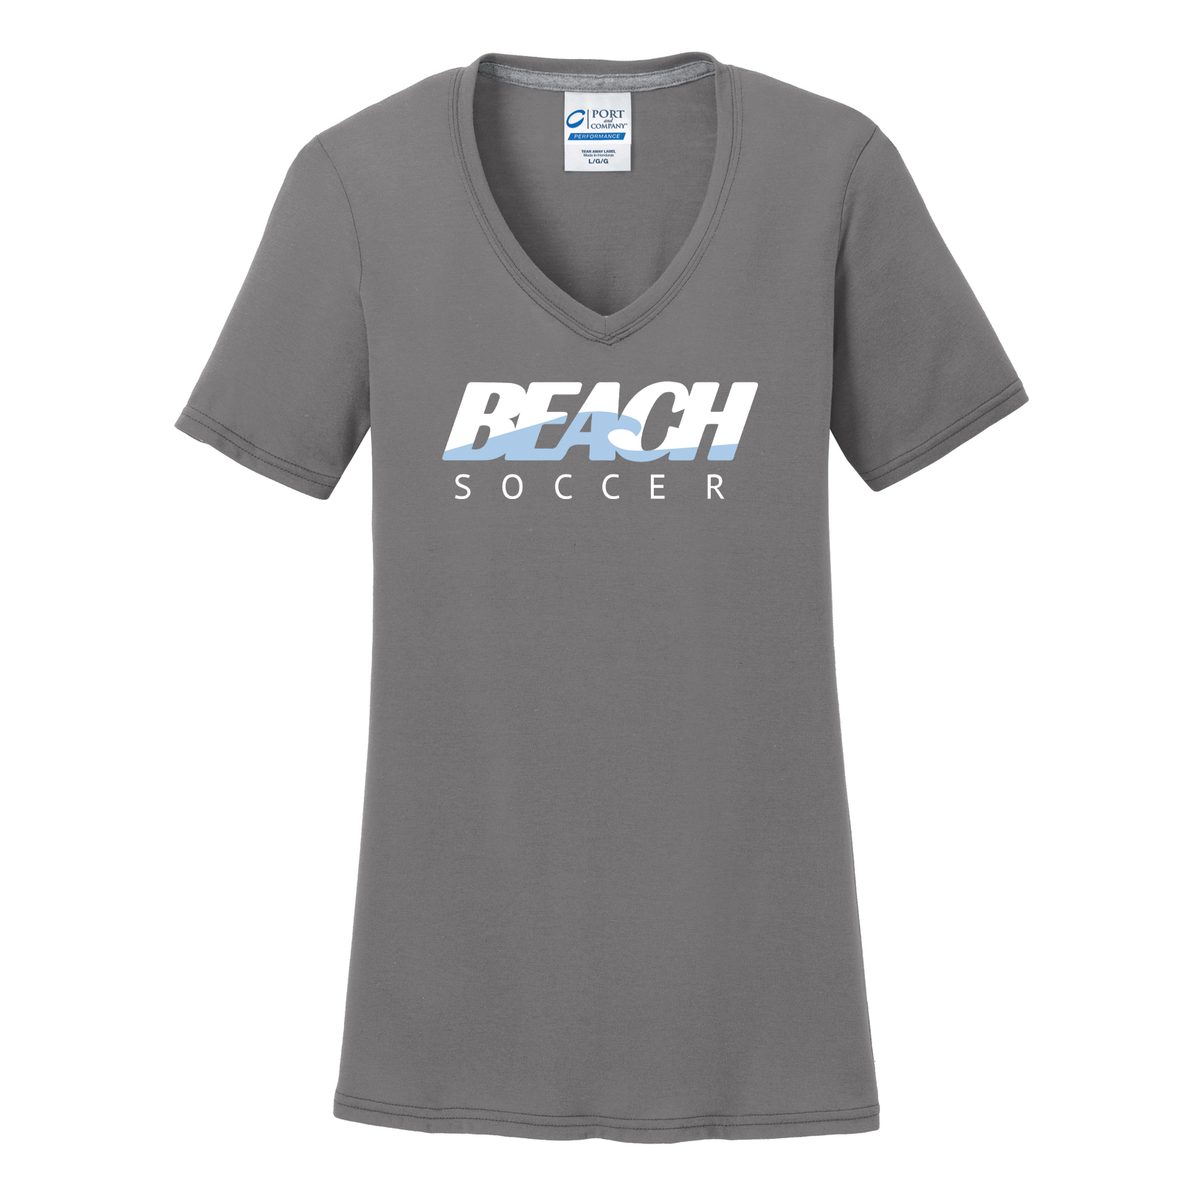 Long Beach Soccer Women's T-Shirt